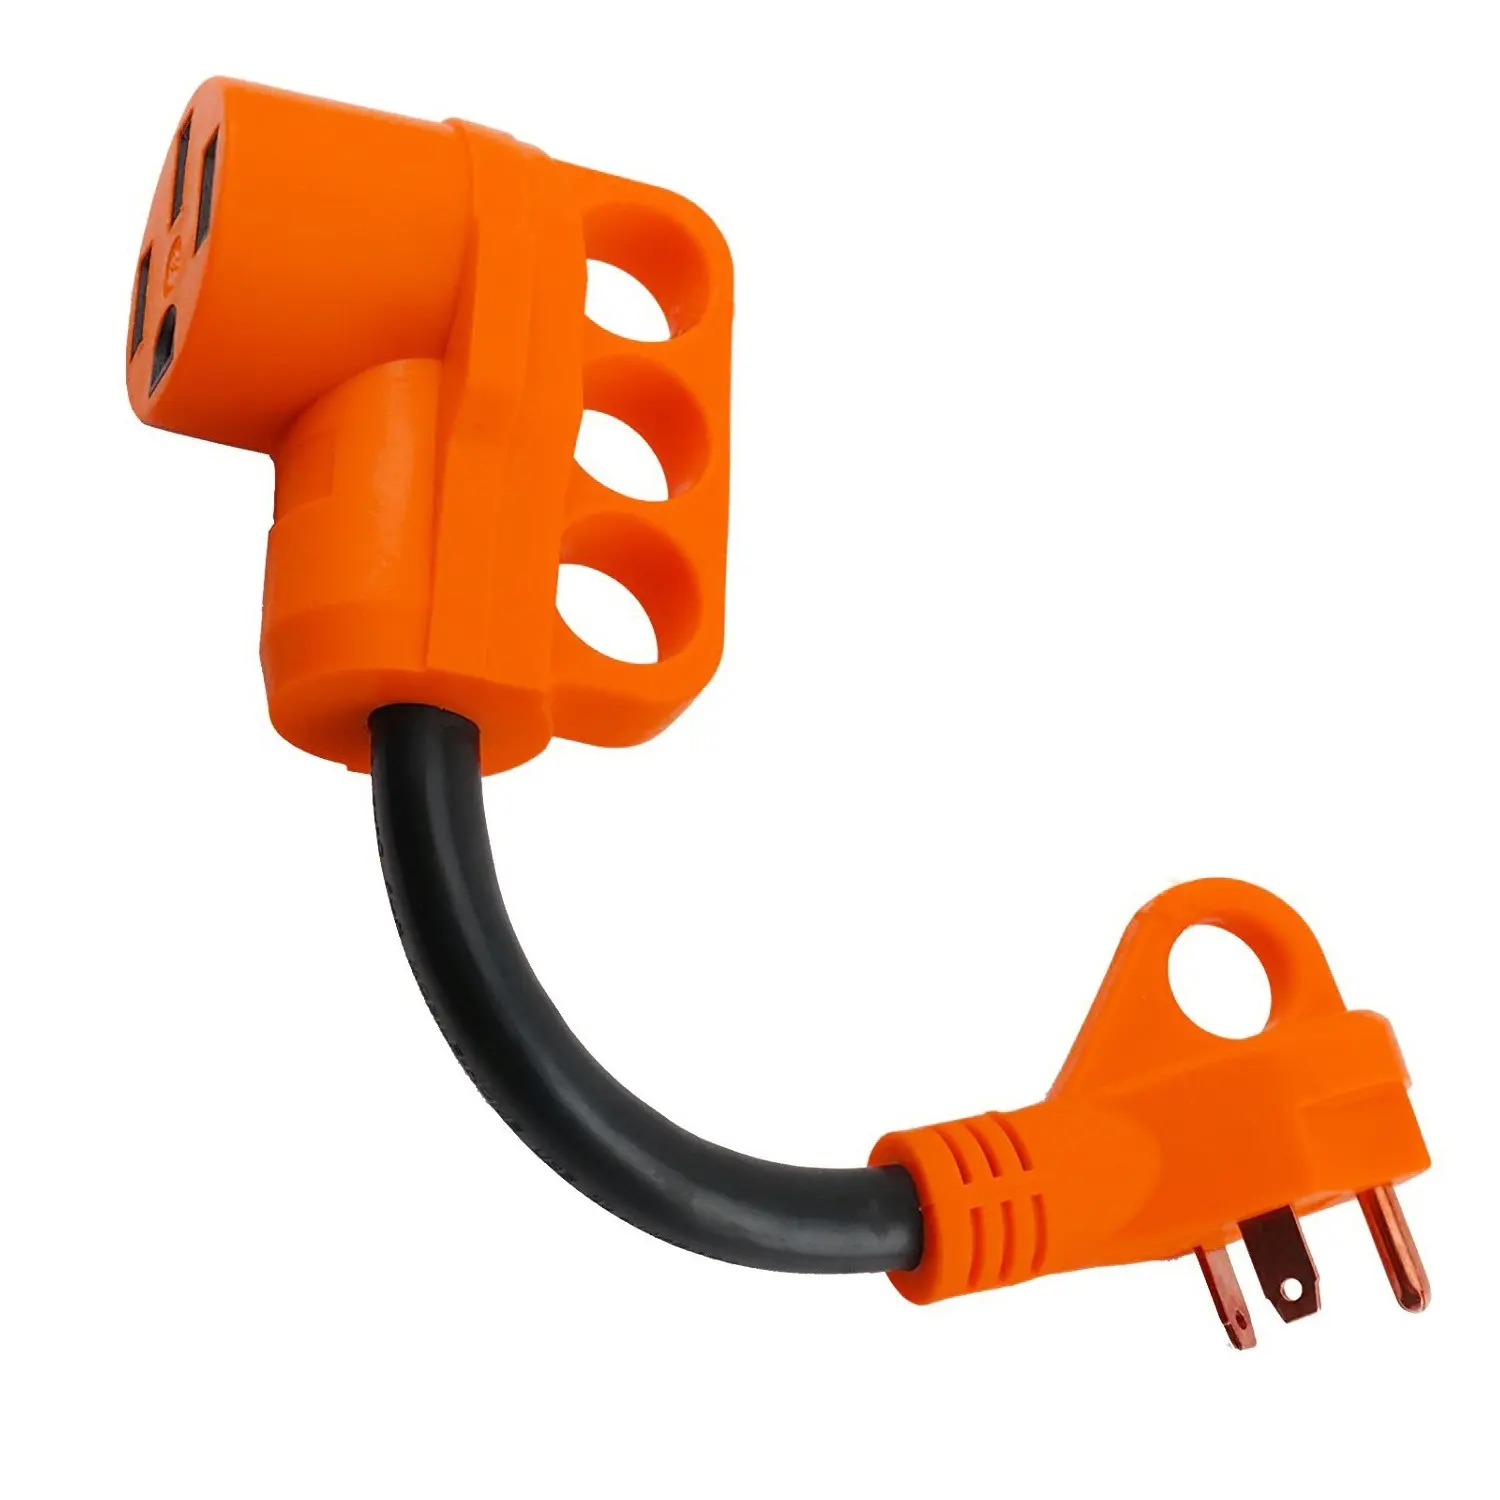 Kabel ekstensi adaptor rv elektrik AS wadah 30 Amp ke steker 50 Amp dengan pegangan daya di kedua ujung